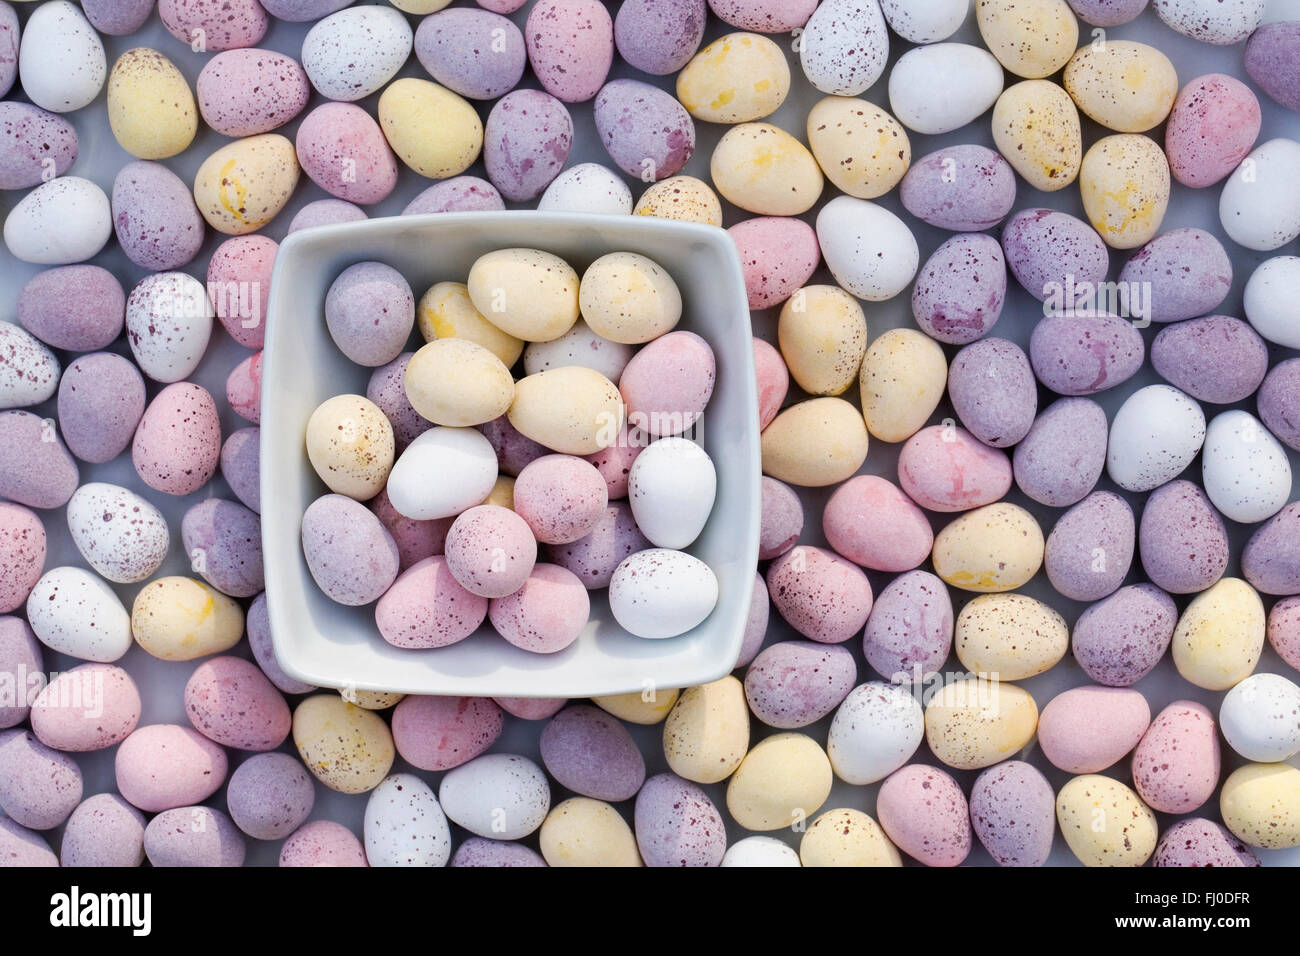 Cadbury's mini eggs. Stock Photo